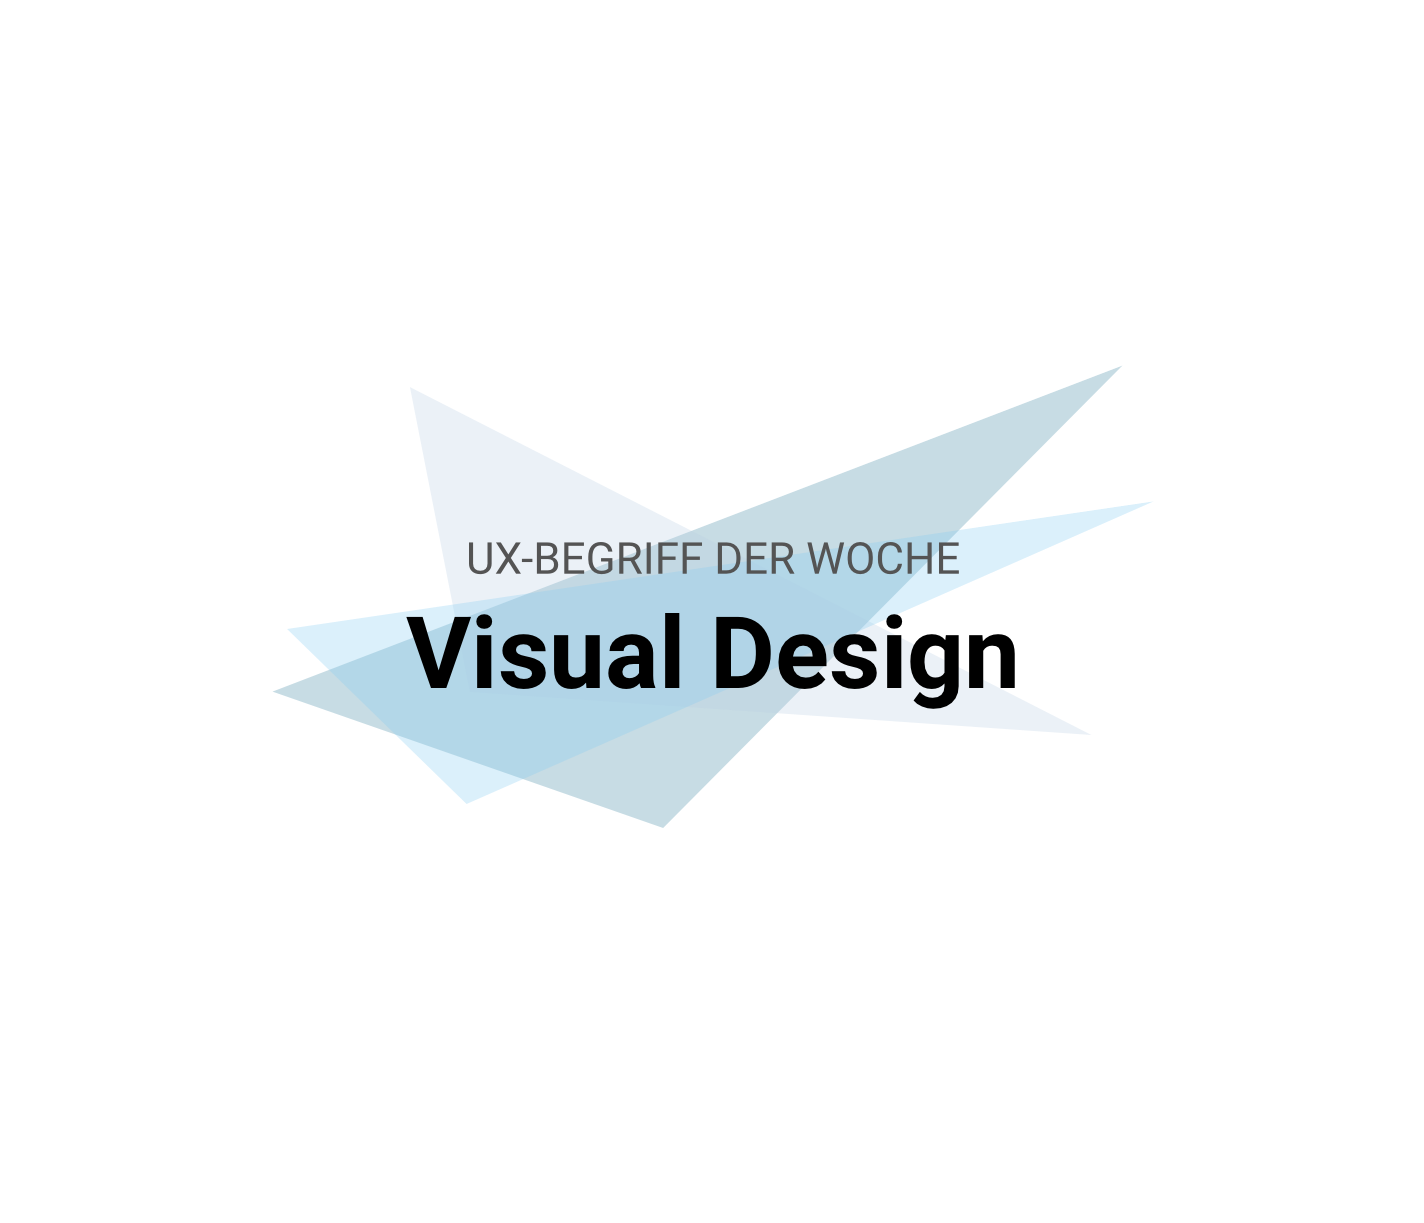 UX-Begriffe kurz erklärt: "Visual Design"